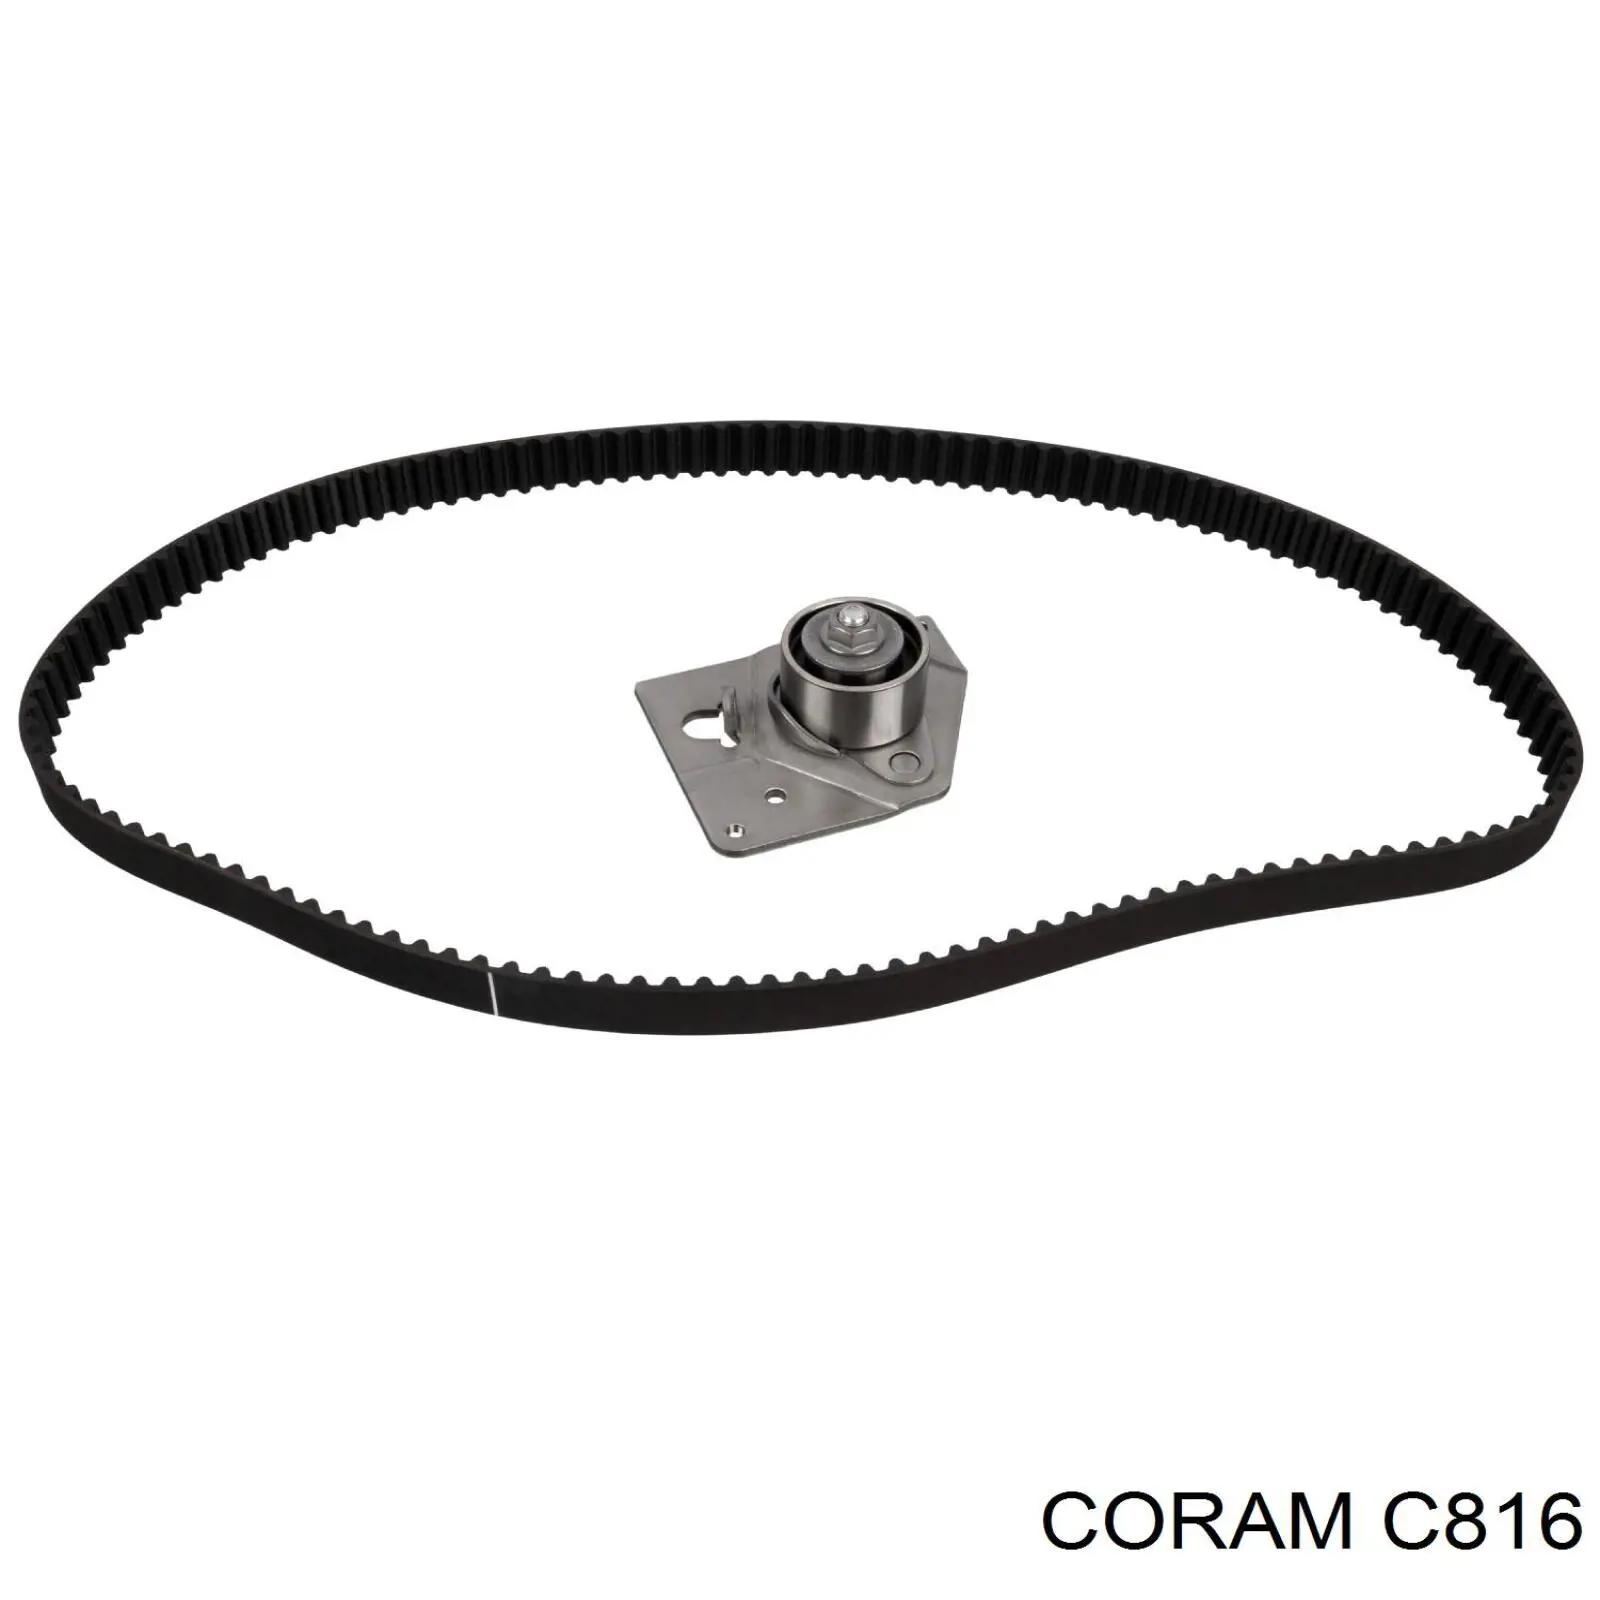 C816 Coram tensor correa distribución